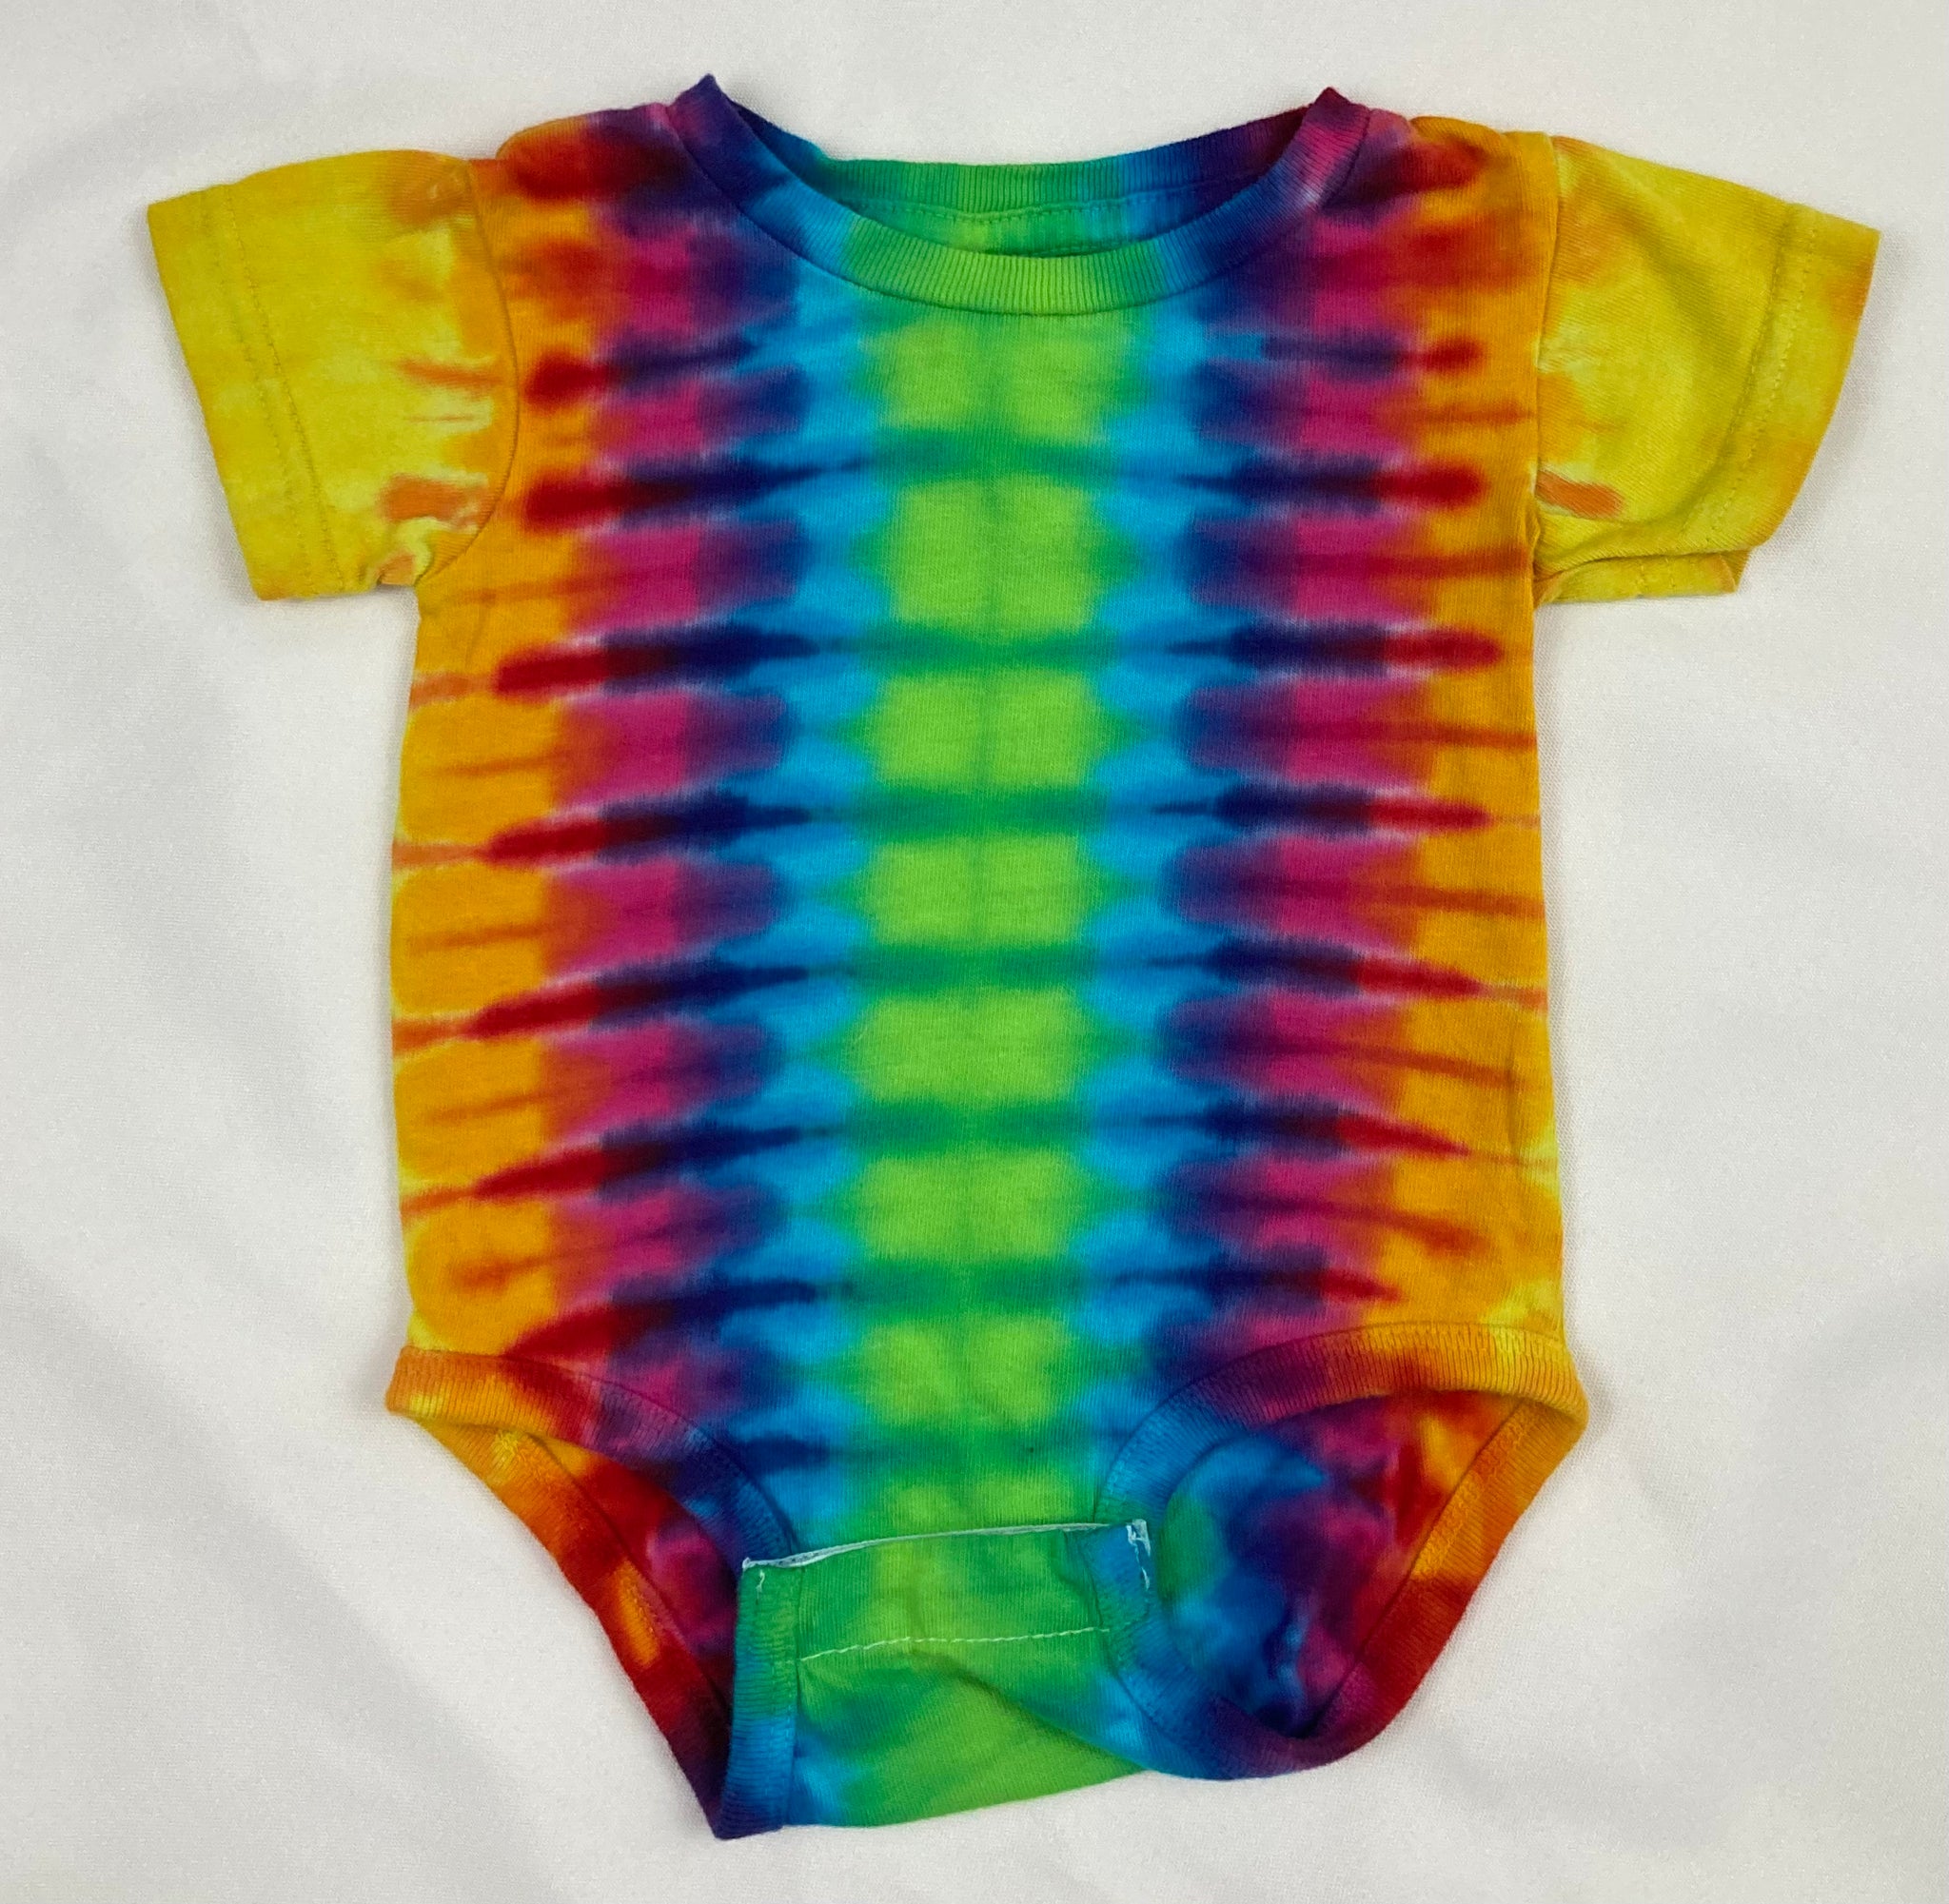 Baby Bright Rainbow Tie-Dyed Bodysuit, 6M